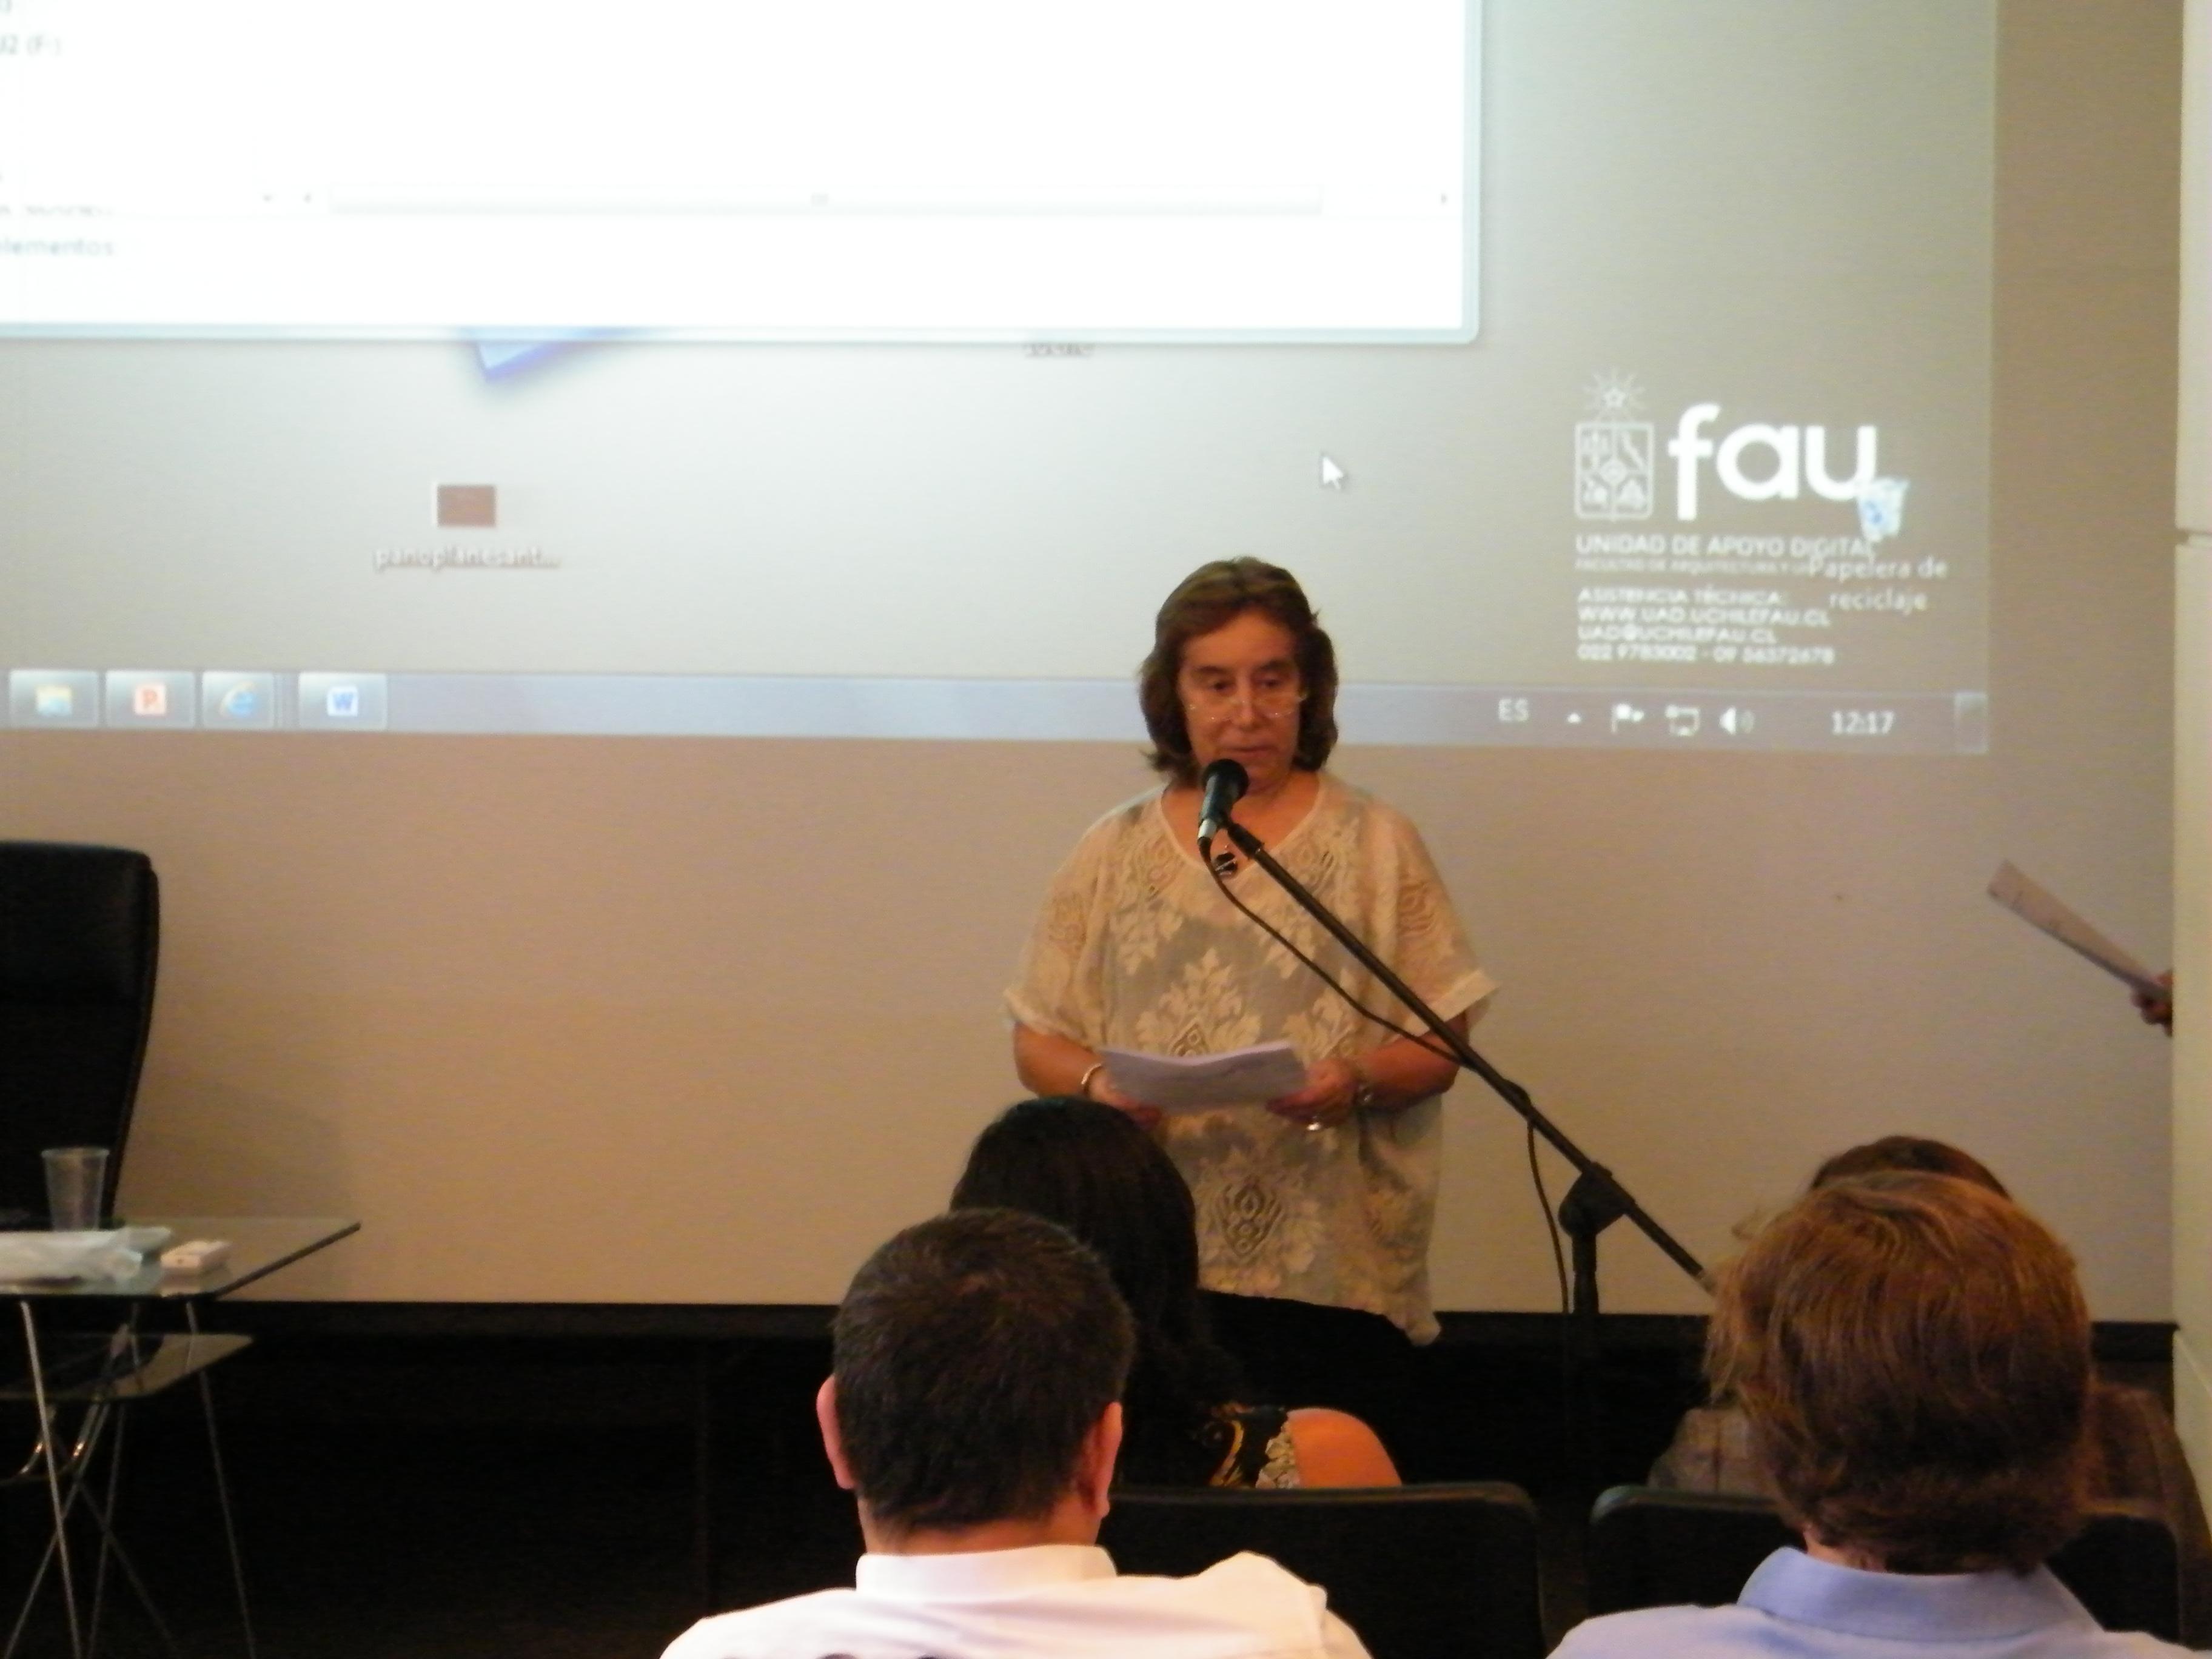 La Decana Marcela Pizzi abrió la presentación destacando la incorporación de estas tecnologías para facilitar la labor académica e investigativa.